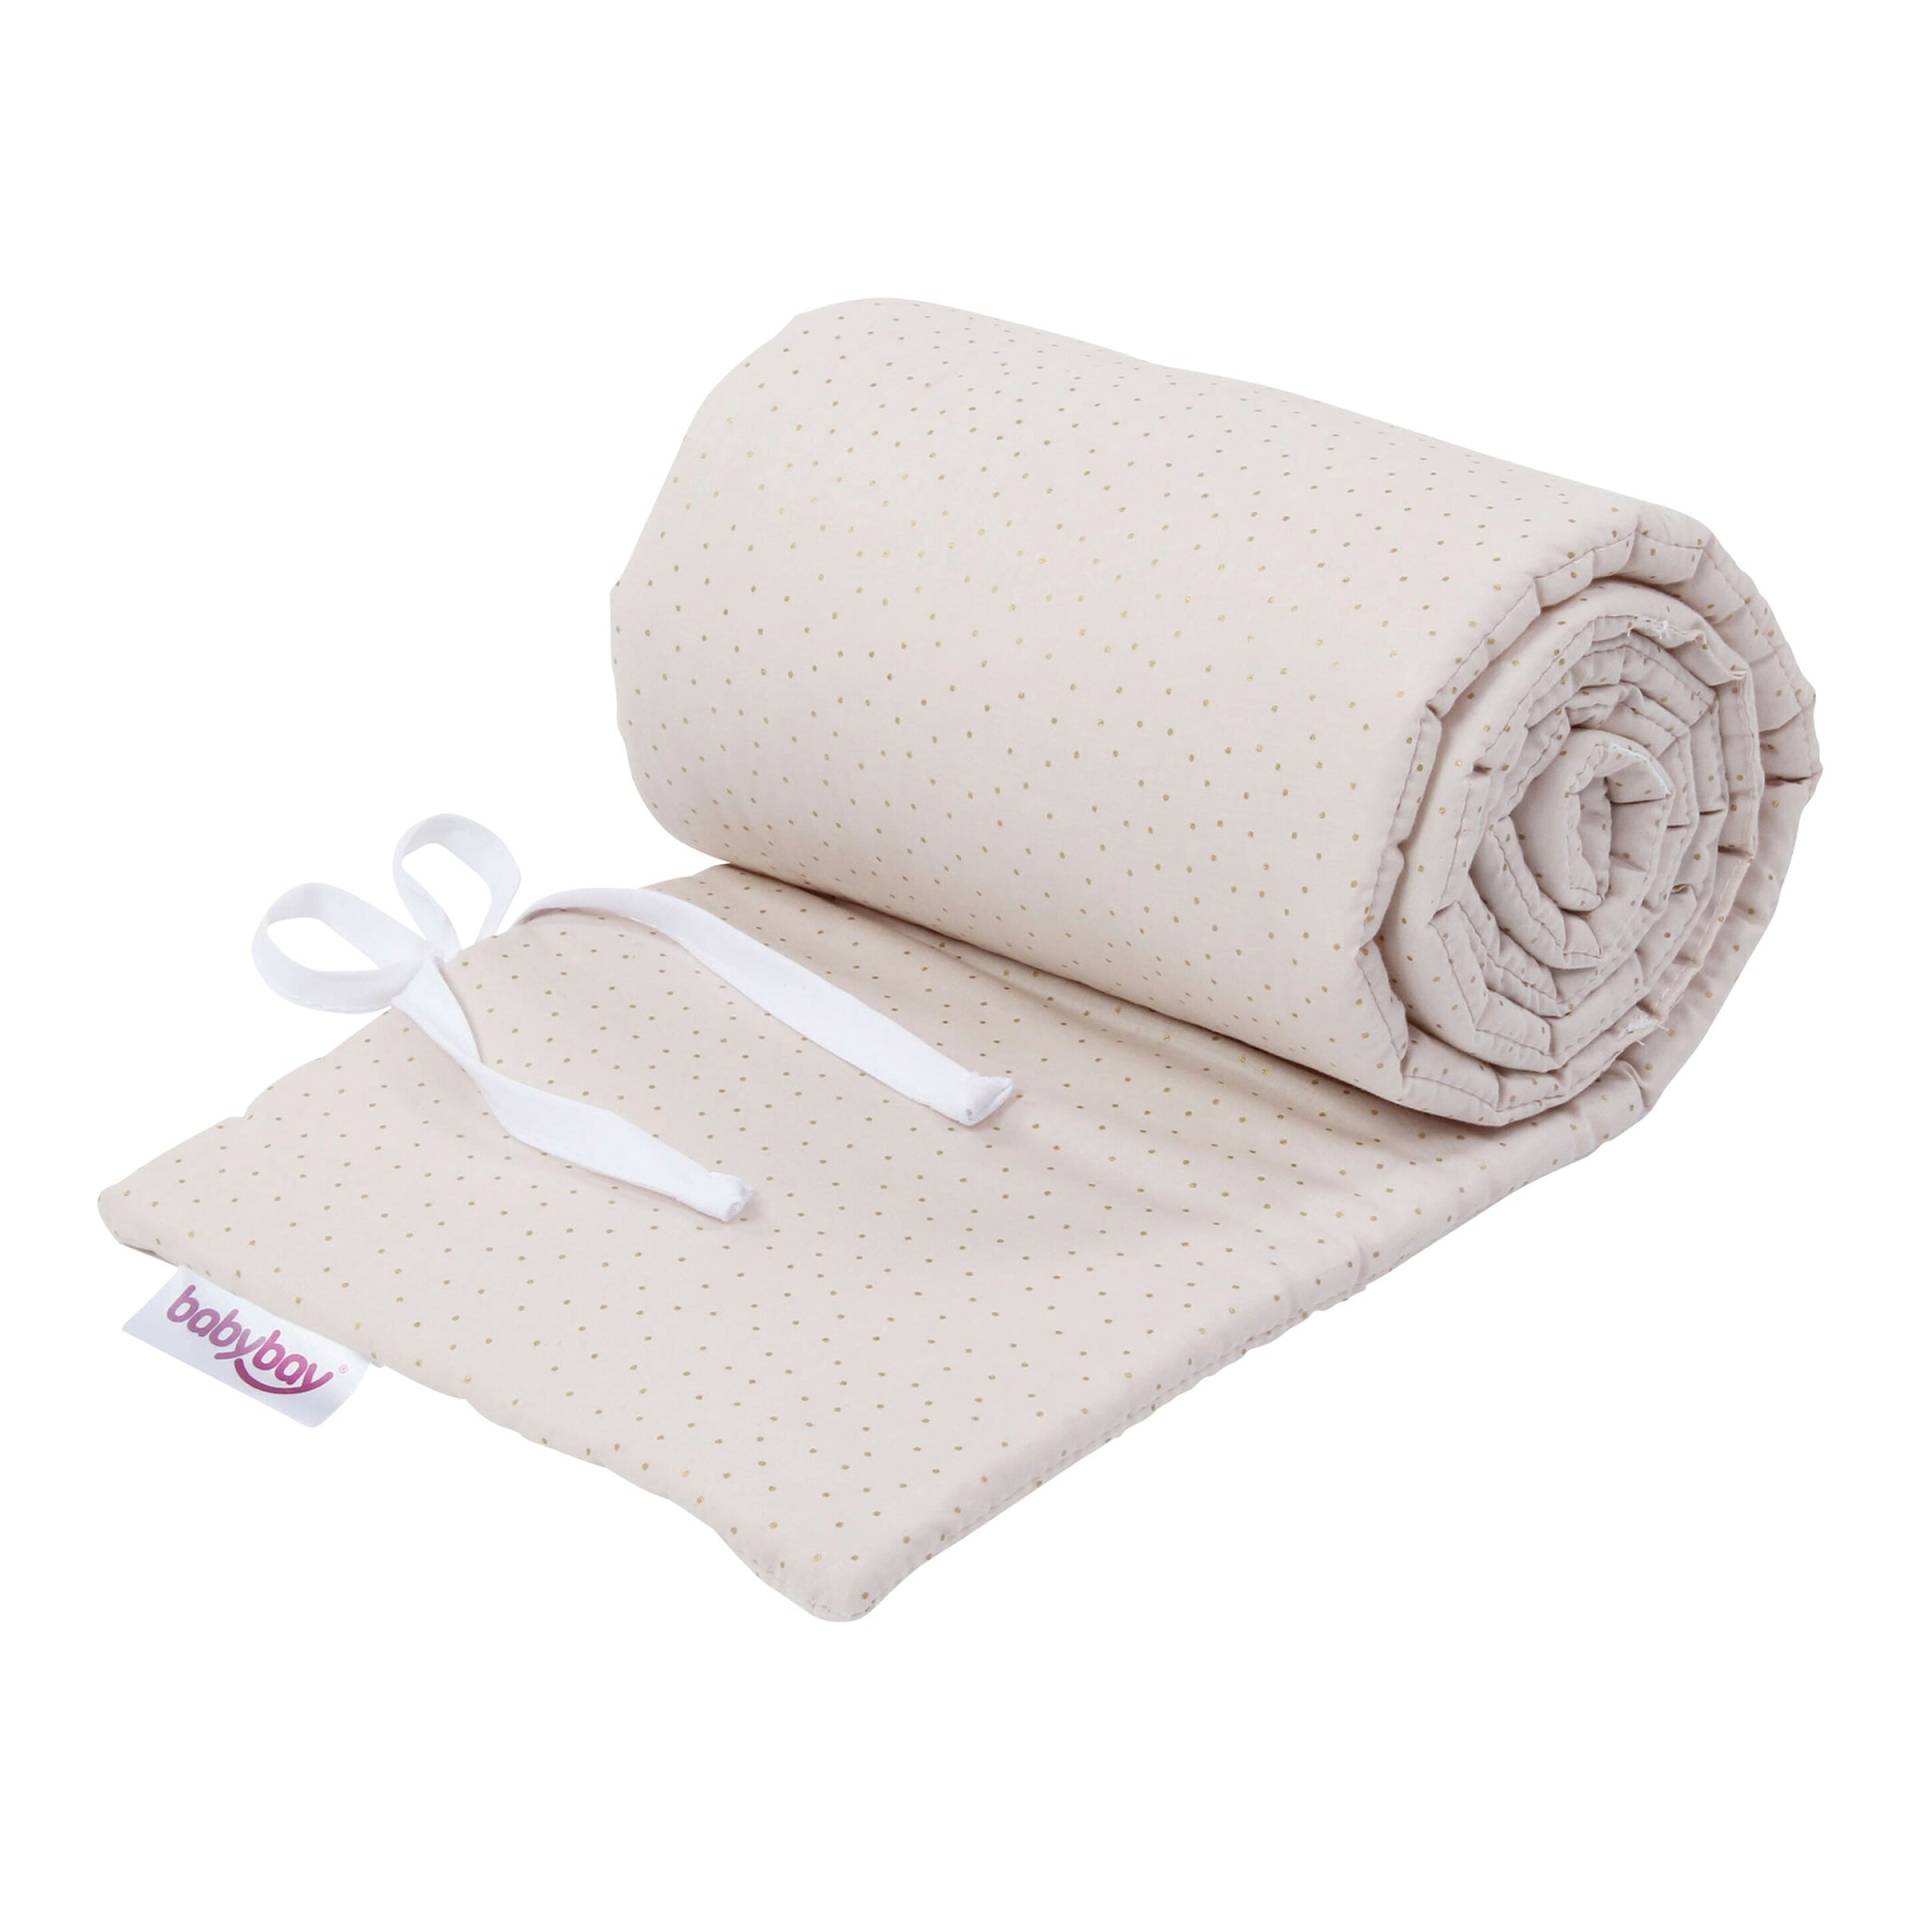 Nestchen Organic Cotton Royal für Beistellbett Maxi, Boxspring, Comfort und Comfort Plus von babybay